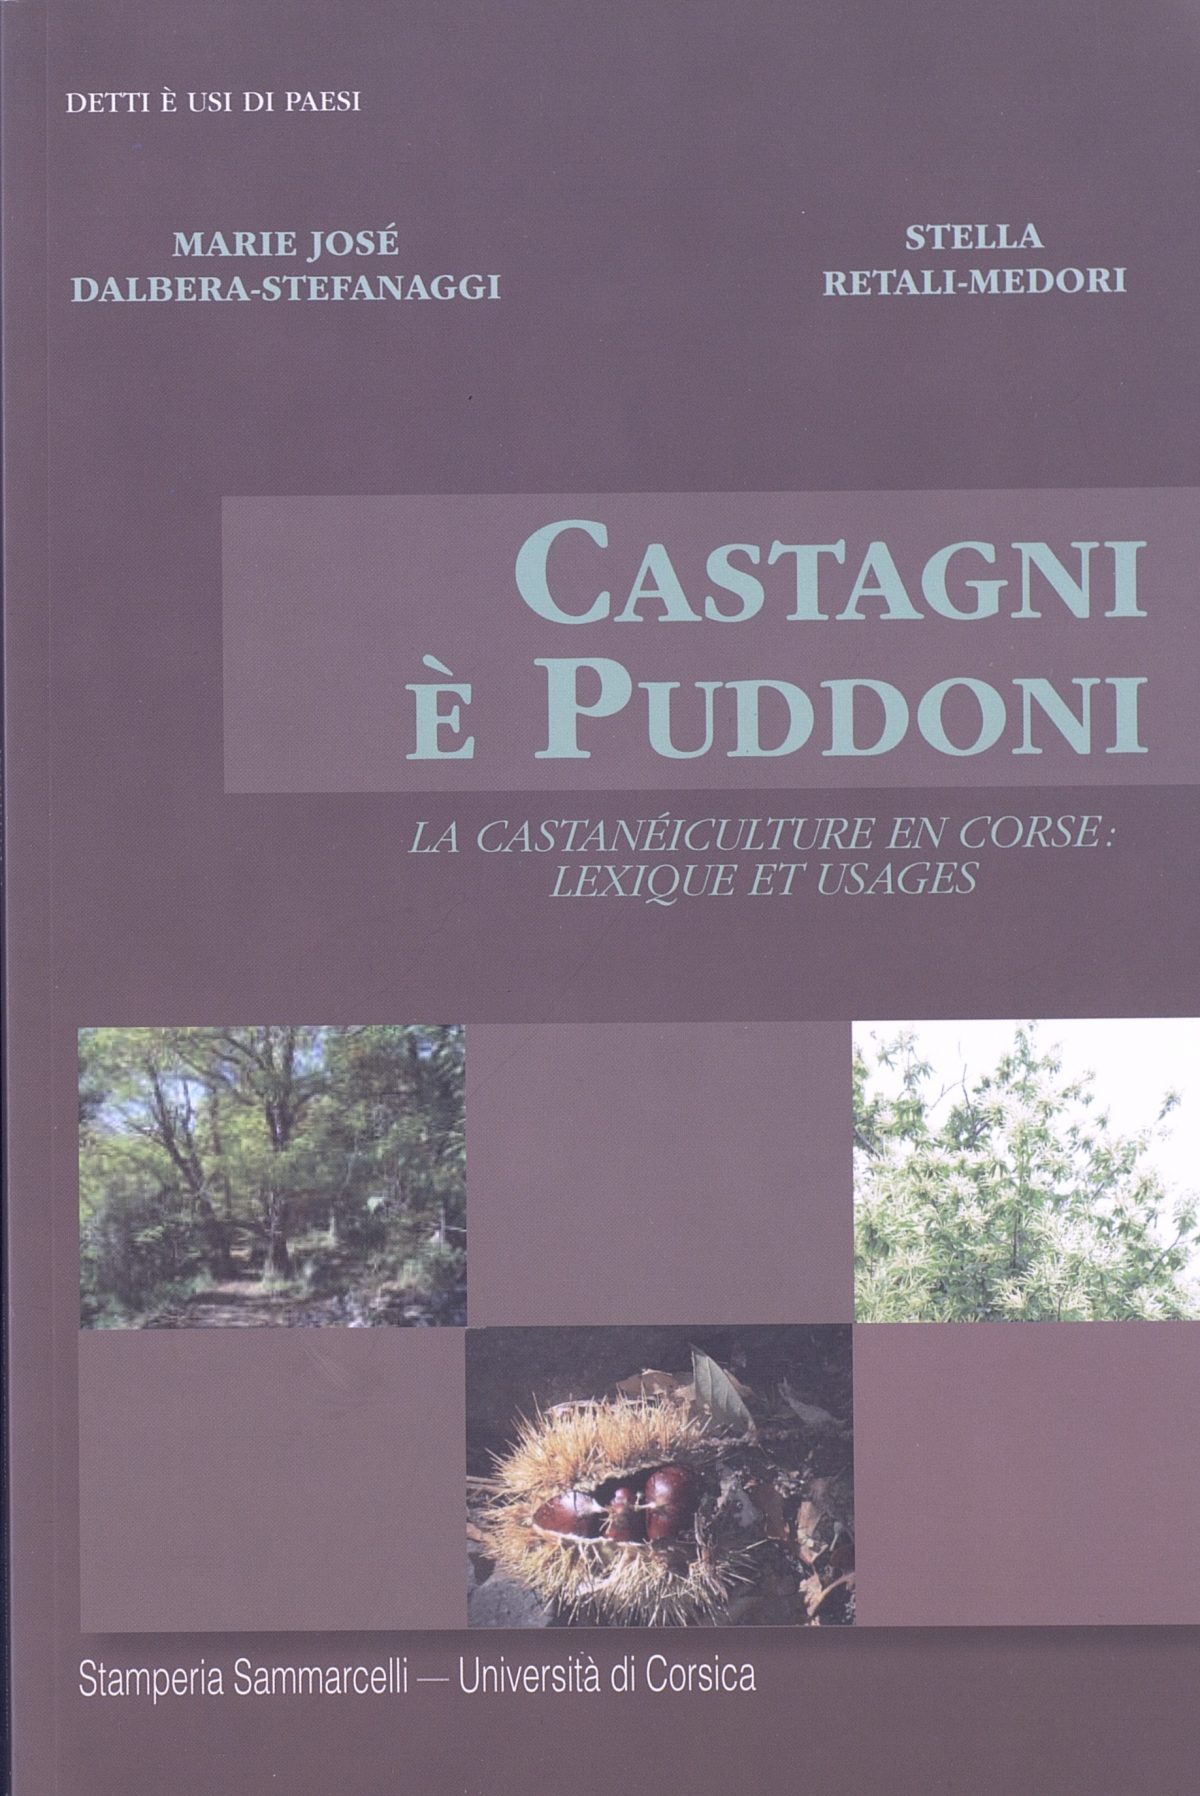 Castagni è puddoni : La castanéiculture en corse : lexique et usages, Biguglia : Éditions Sammarcelli, 2013